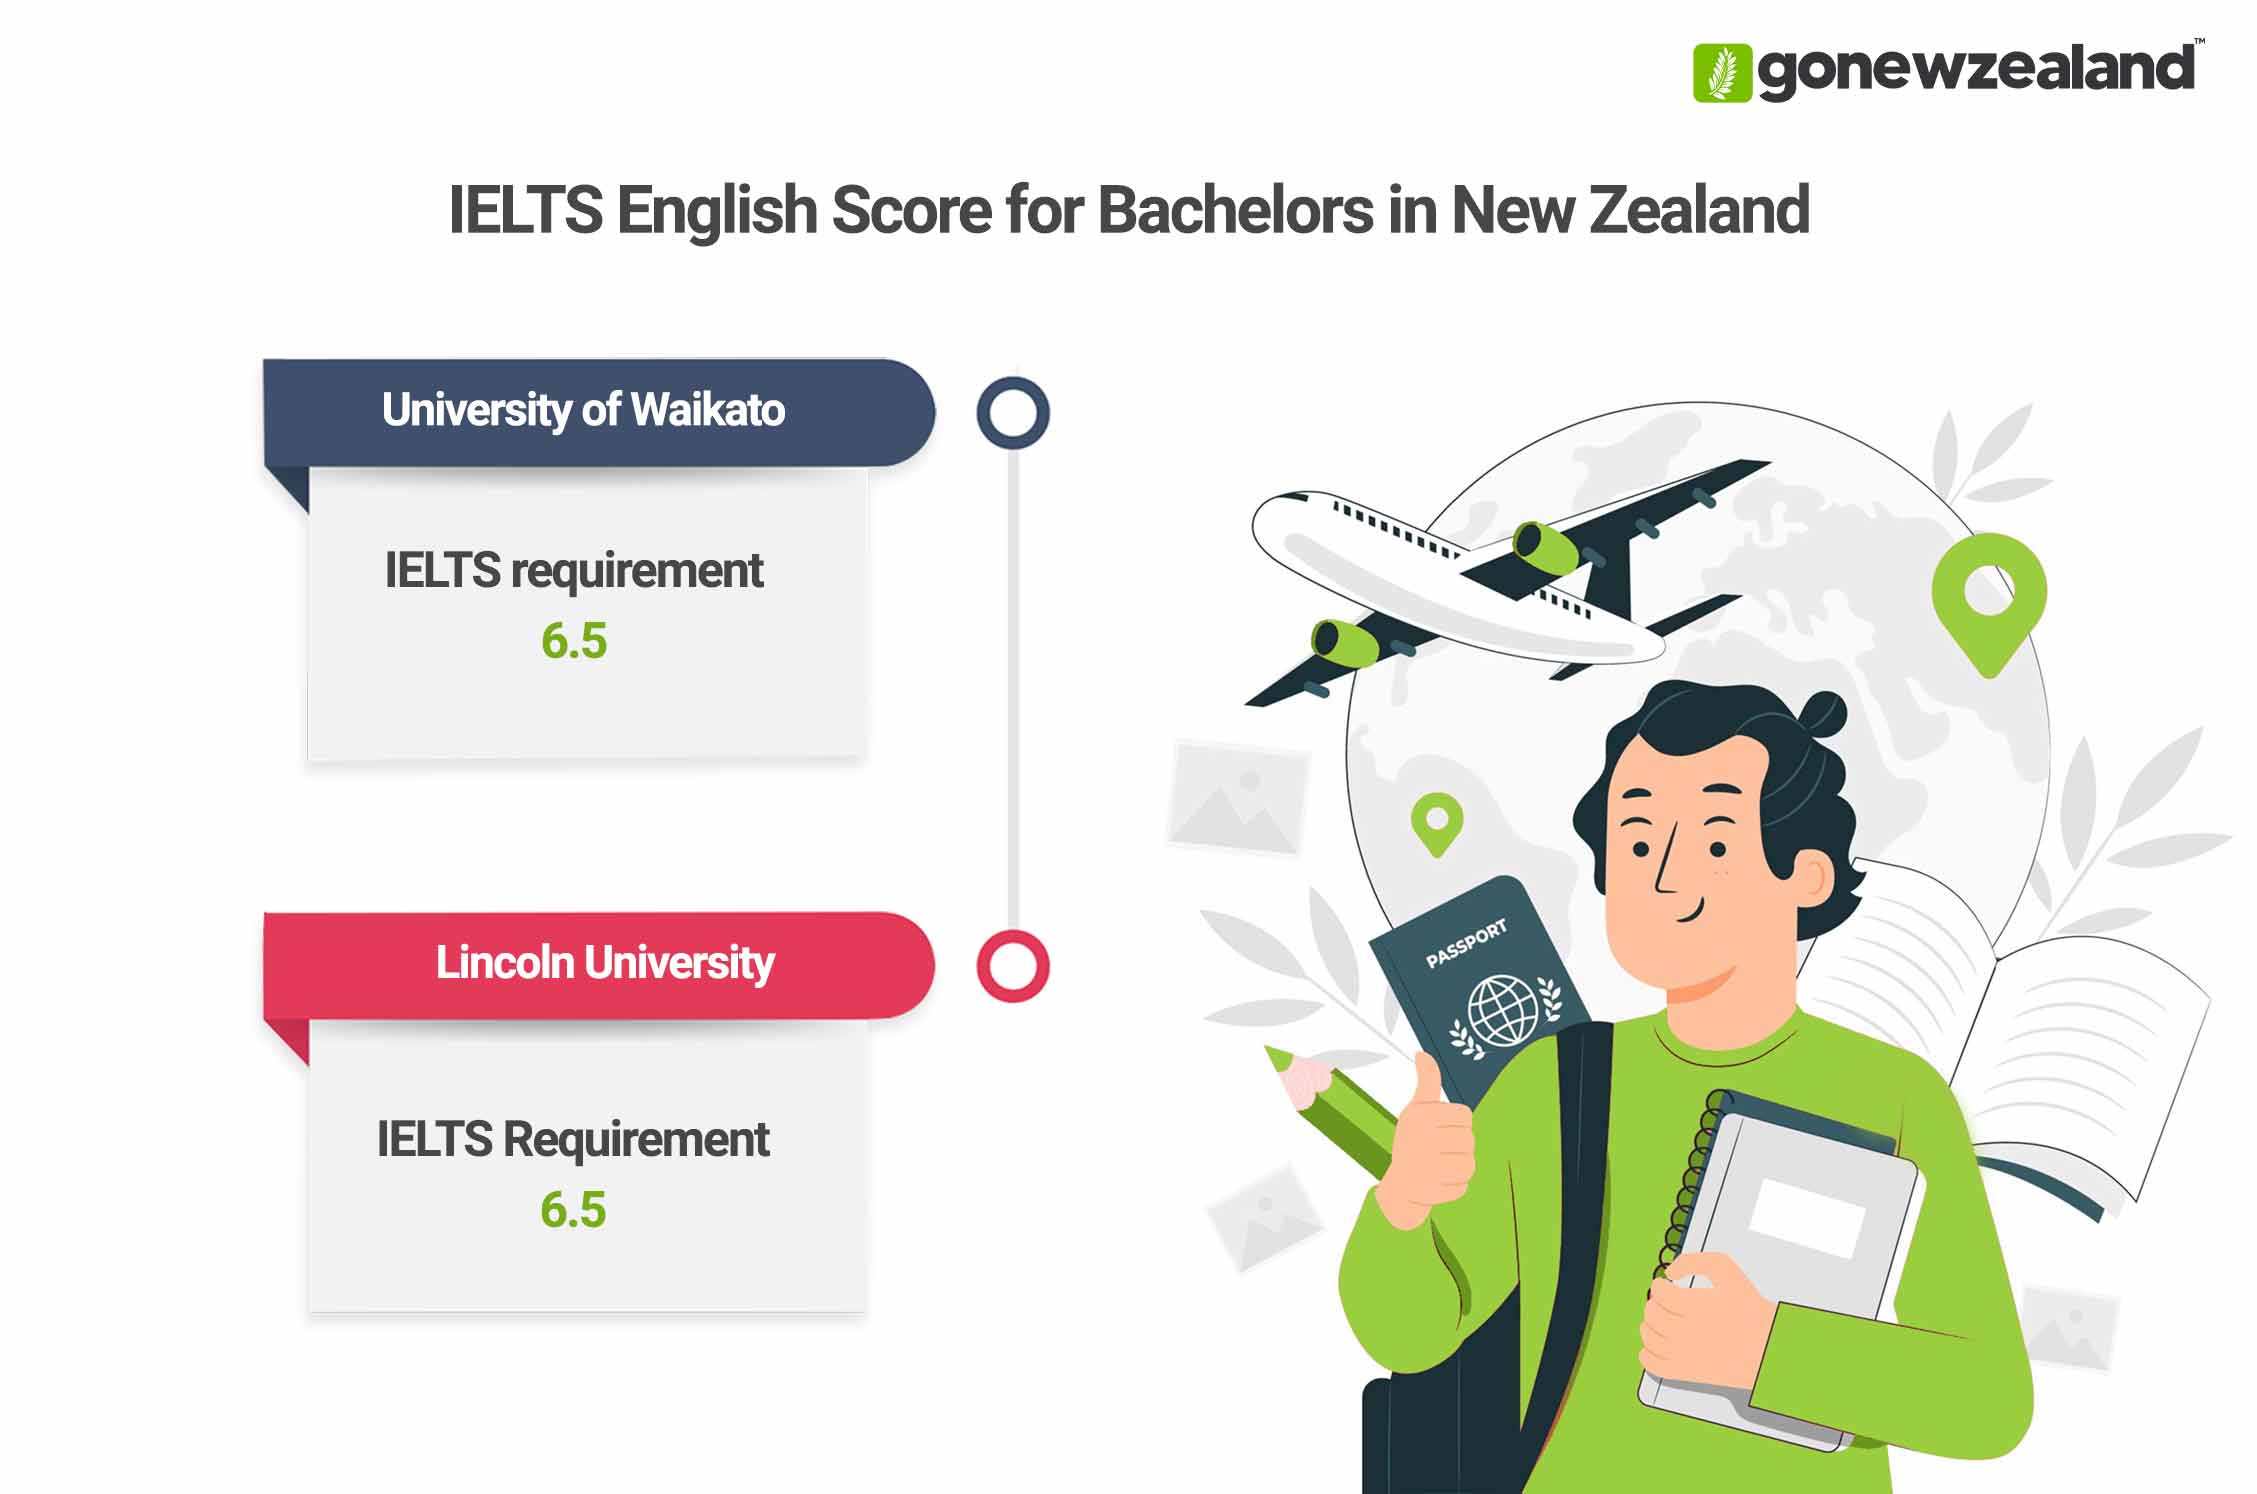 Bachelors in New Zealand IELTS Score